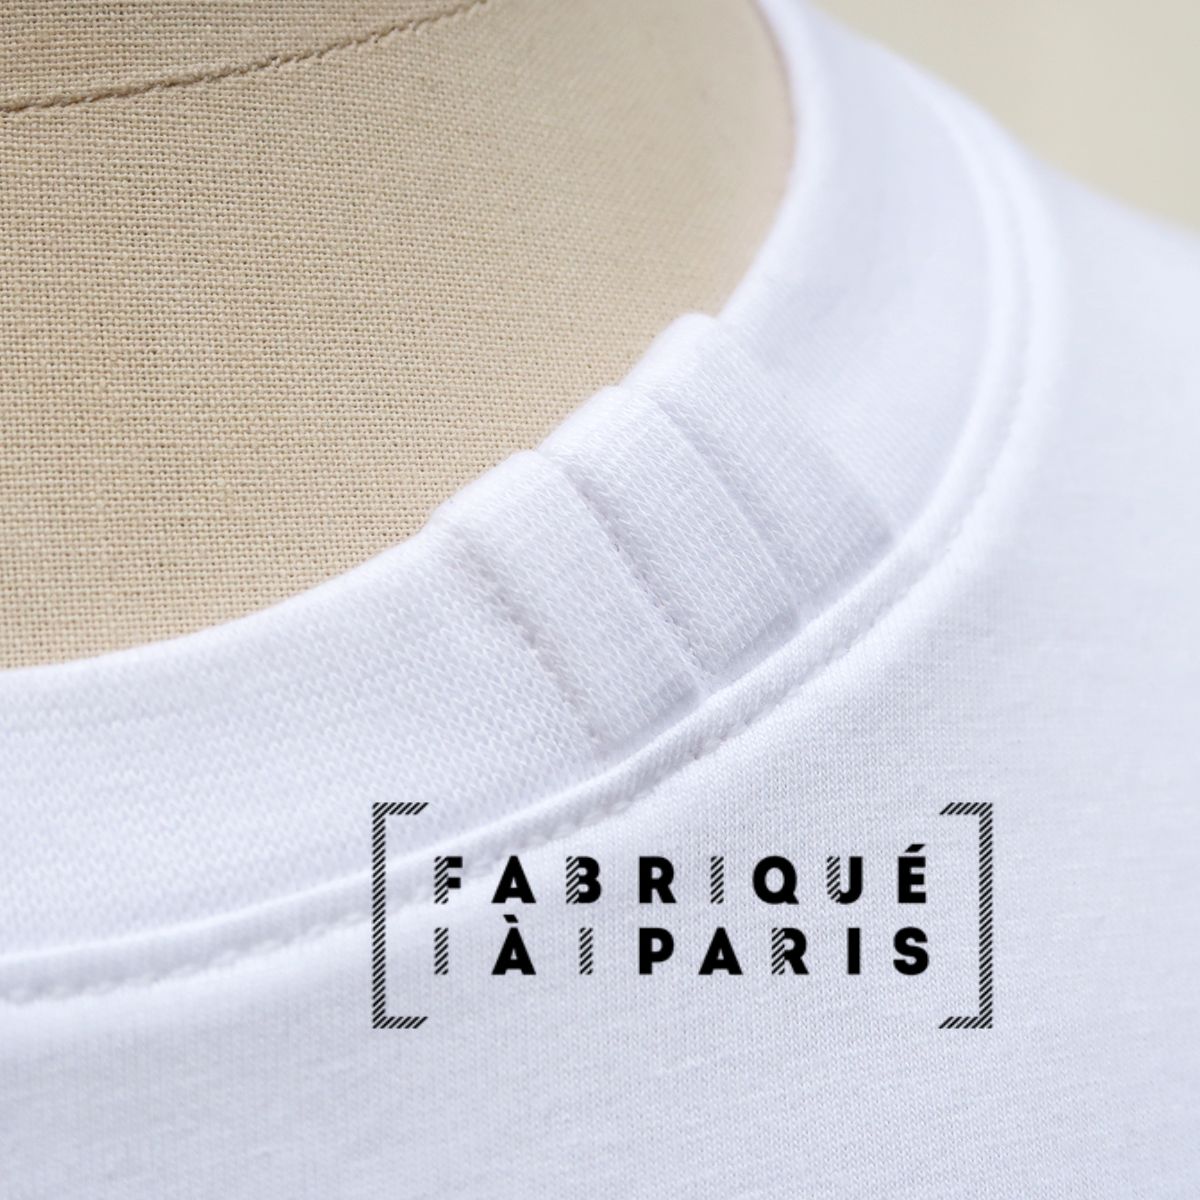 T-shirt français en coton biologique certifié Gots fabriqué avec éthique à Paris Philippe Gaber depuis 2009.